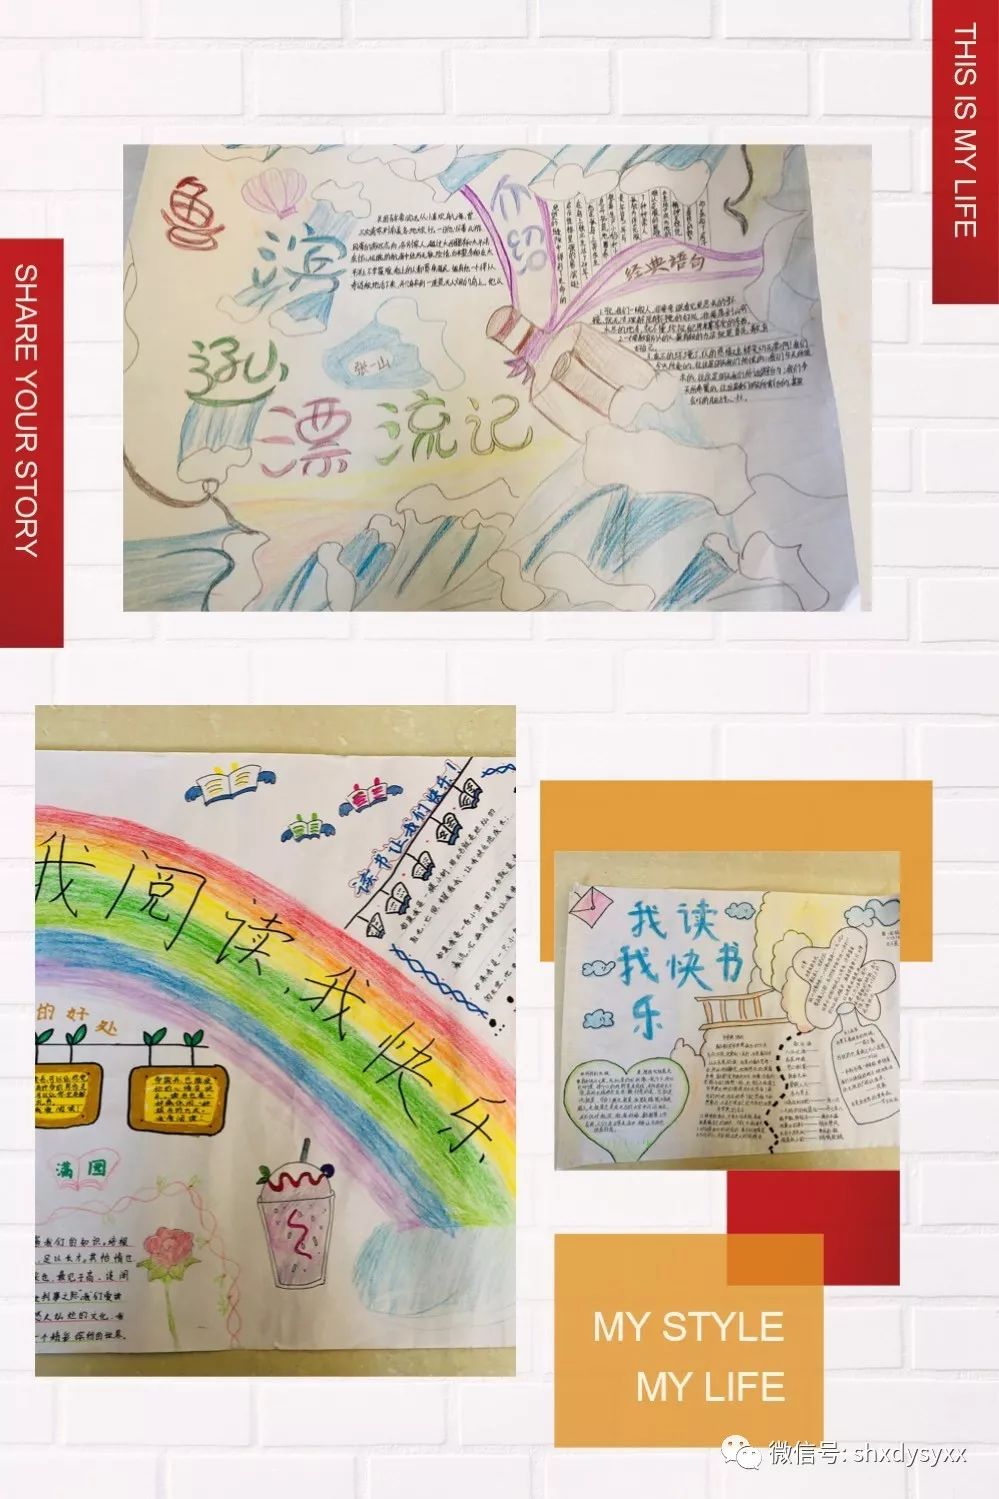 换一种方式去阅读———泗洪县第一实验学校六年级手抄报展示